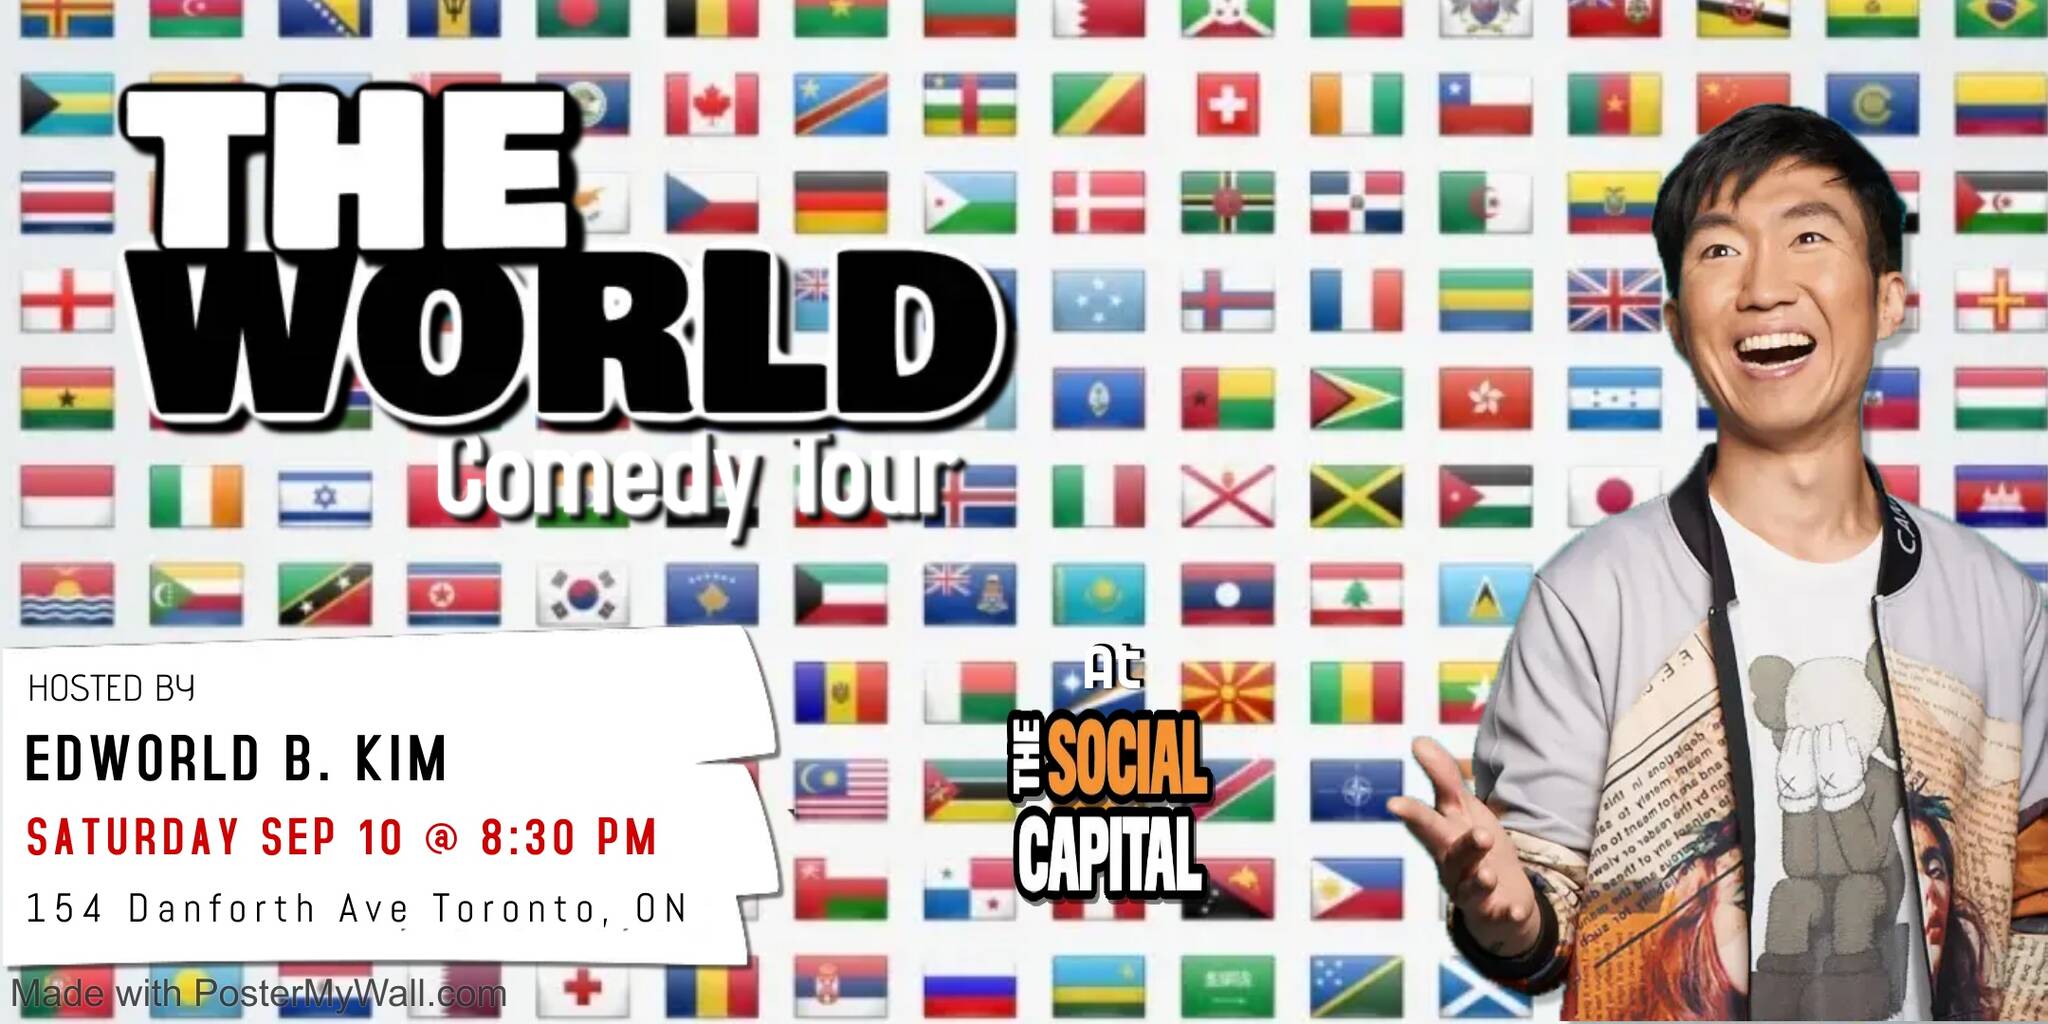 comedy world tour